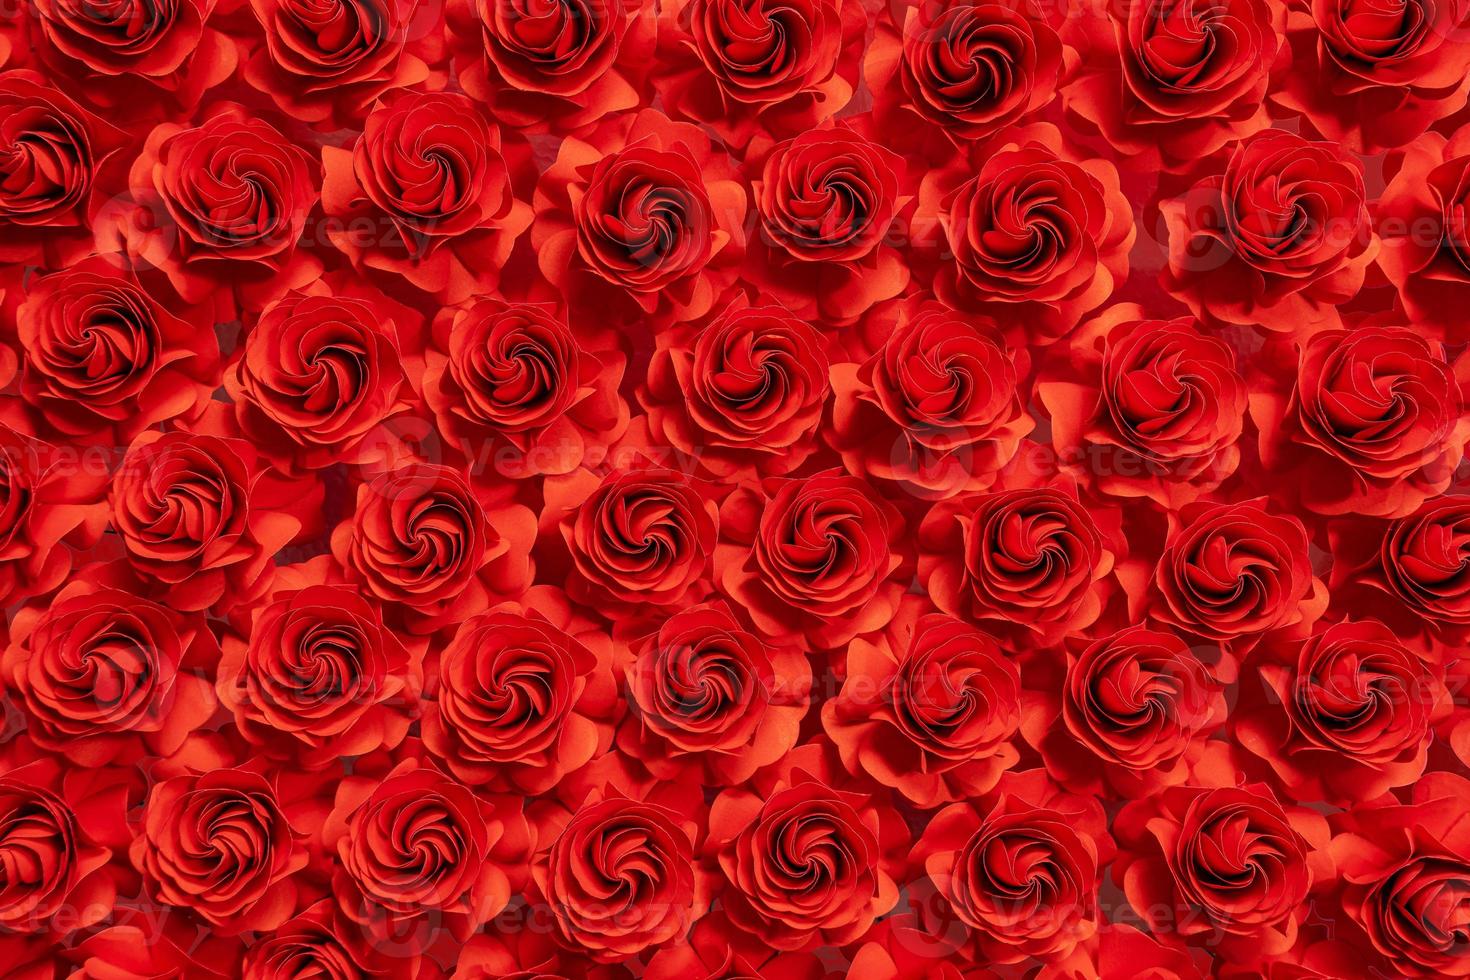 pappersblomma, röda rosor klippta från papper, bröllopsdekorationer, abstrakt blomma bakgrund foto